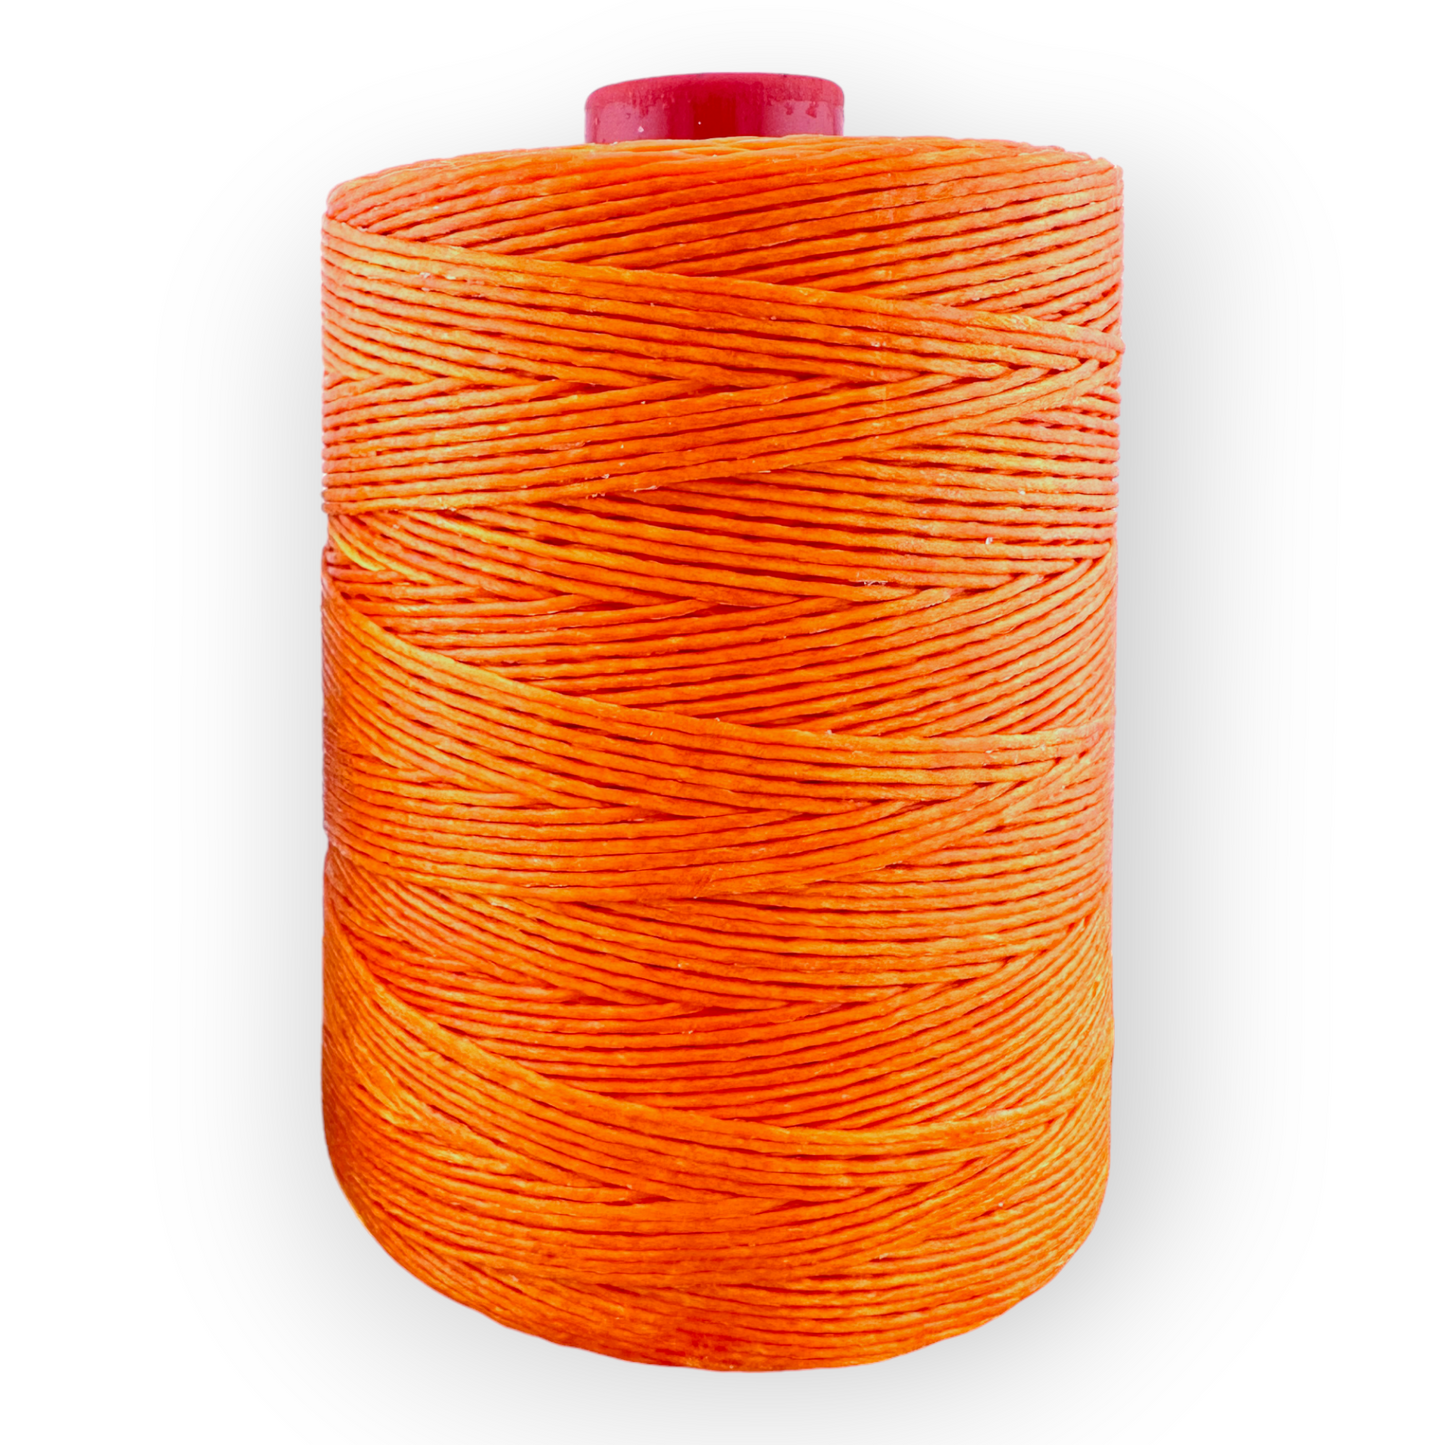 600 Meter Macrame Cord Spool - Orange